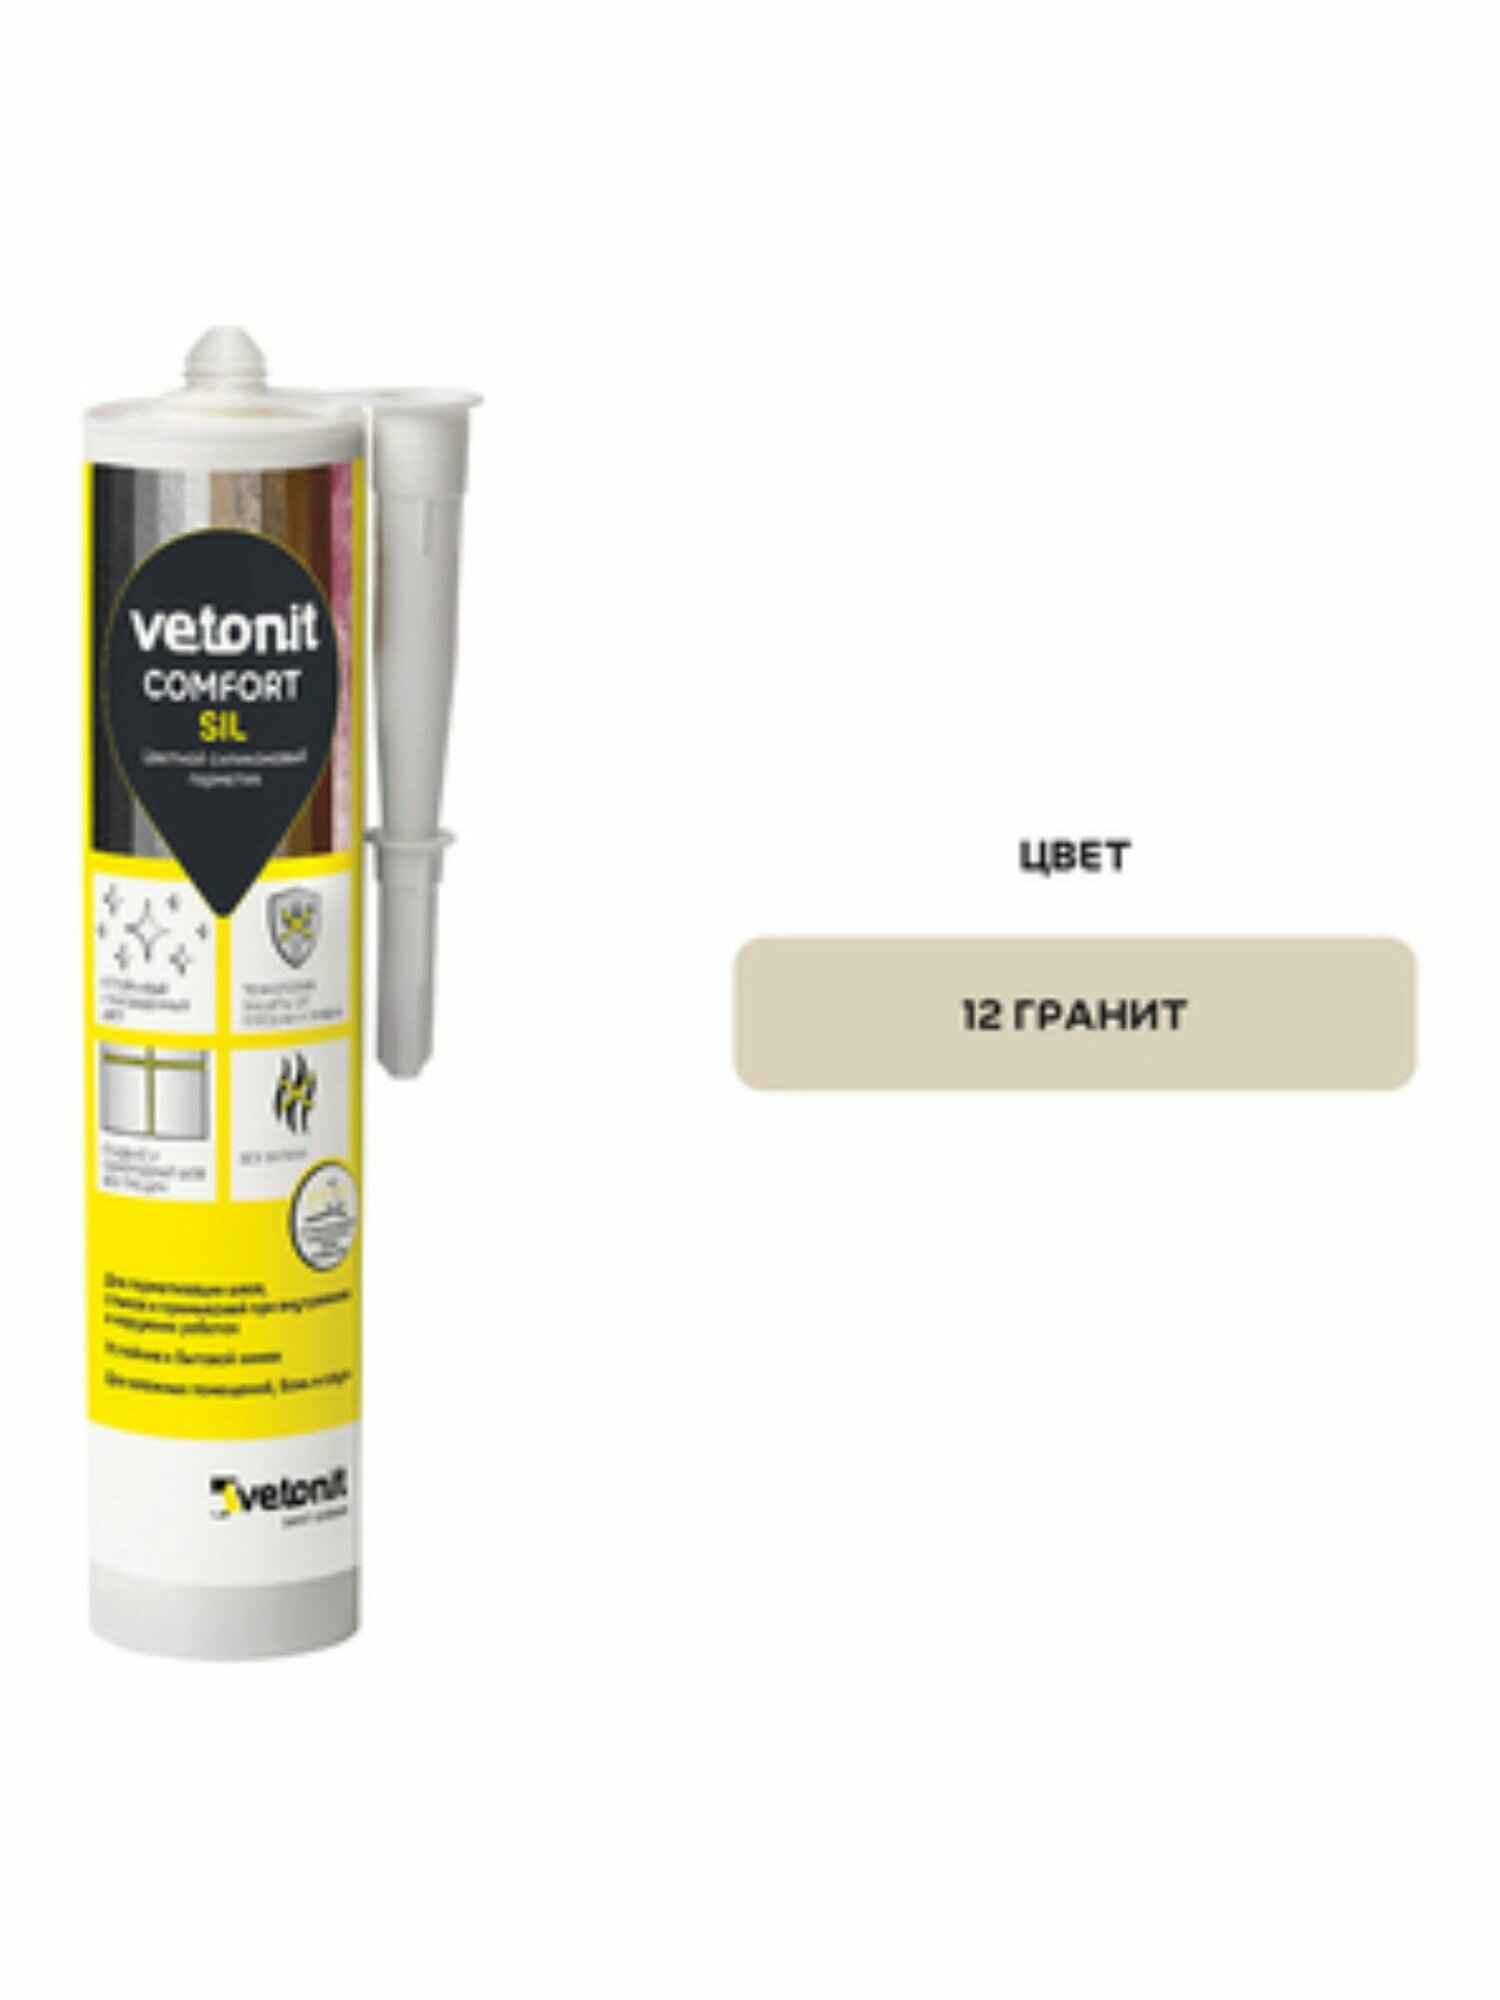 Vetonit Comfort Sil цветной силиконовый герметик 12 гранит, 280 мл